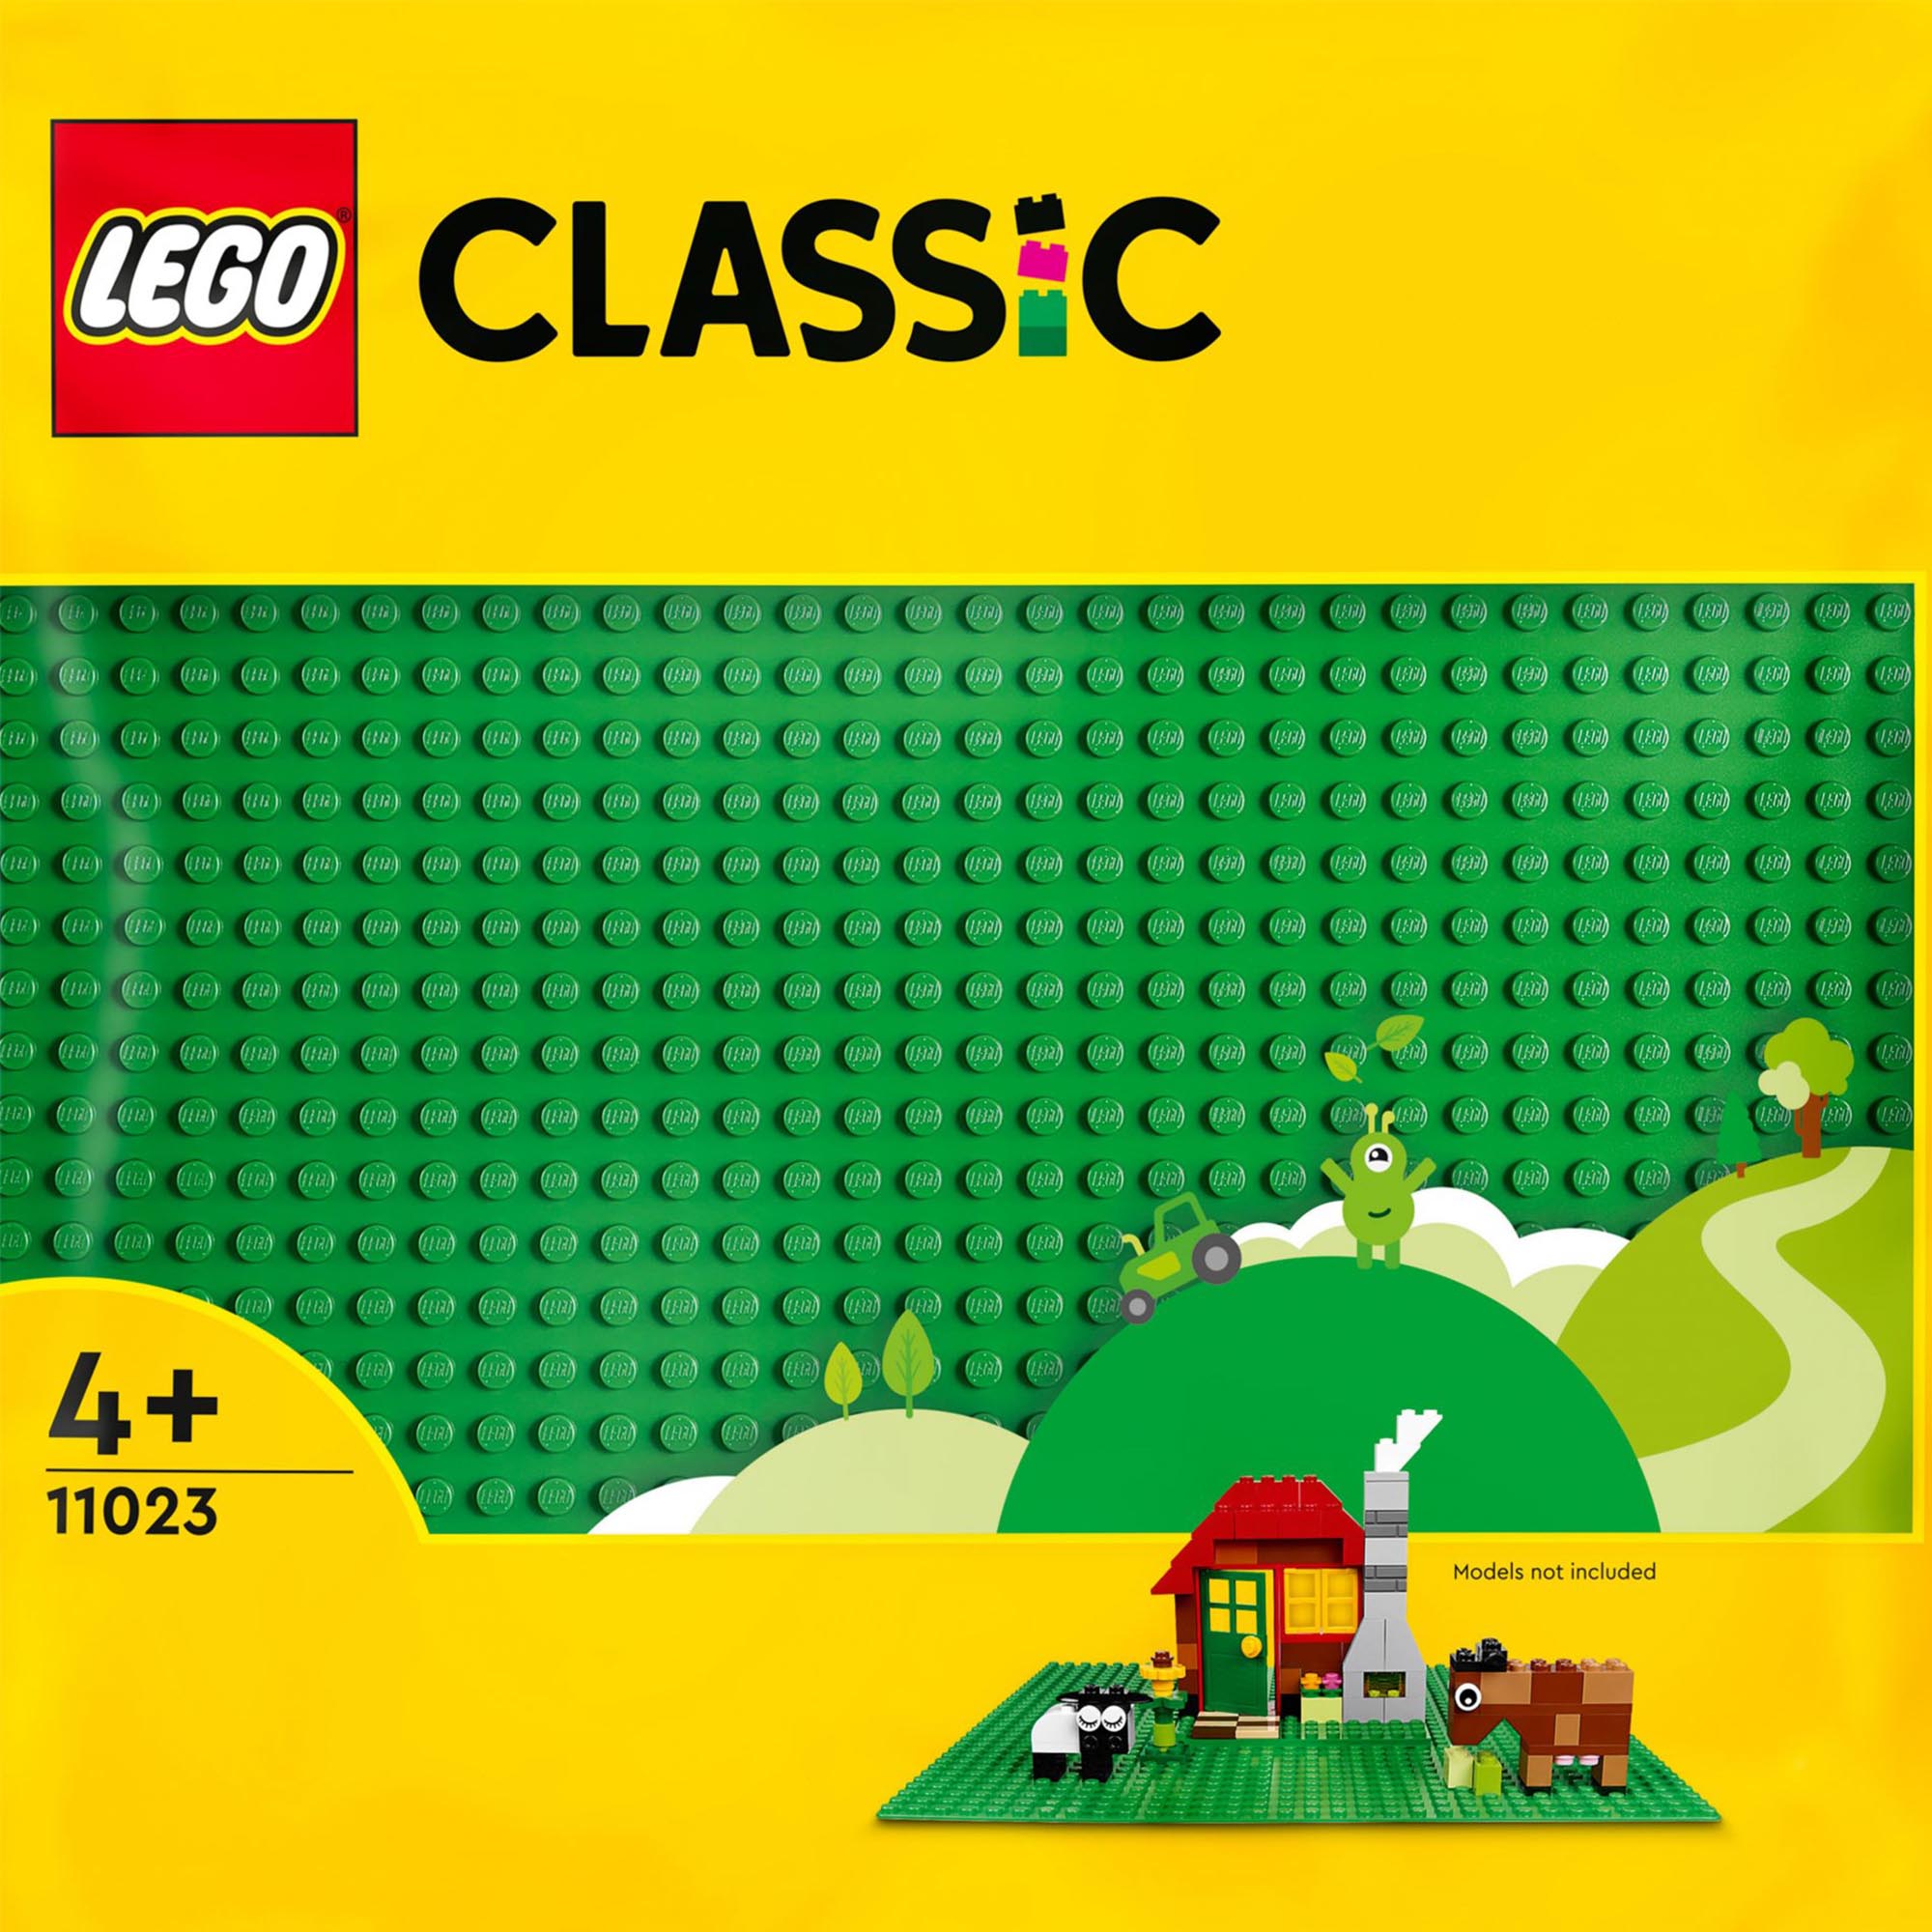 LEGO 11023 Classic Base Verde, Tavola per Costruzioni Quadrata con 32x32 Bottonc 11023, , large